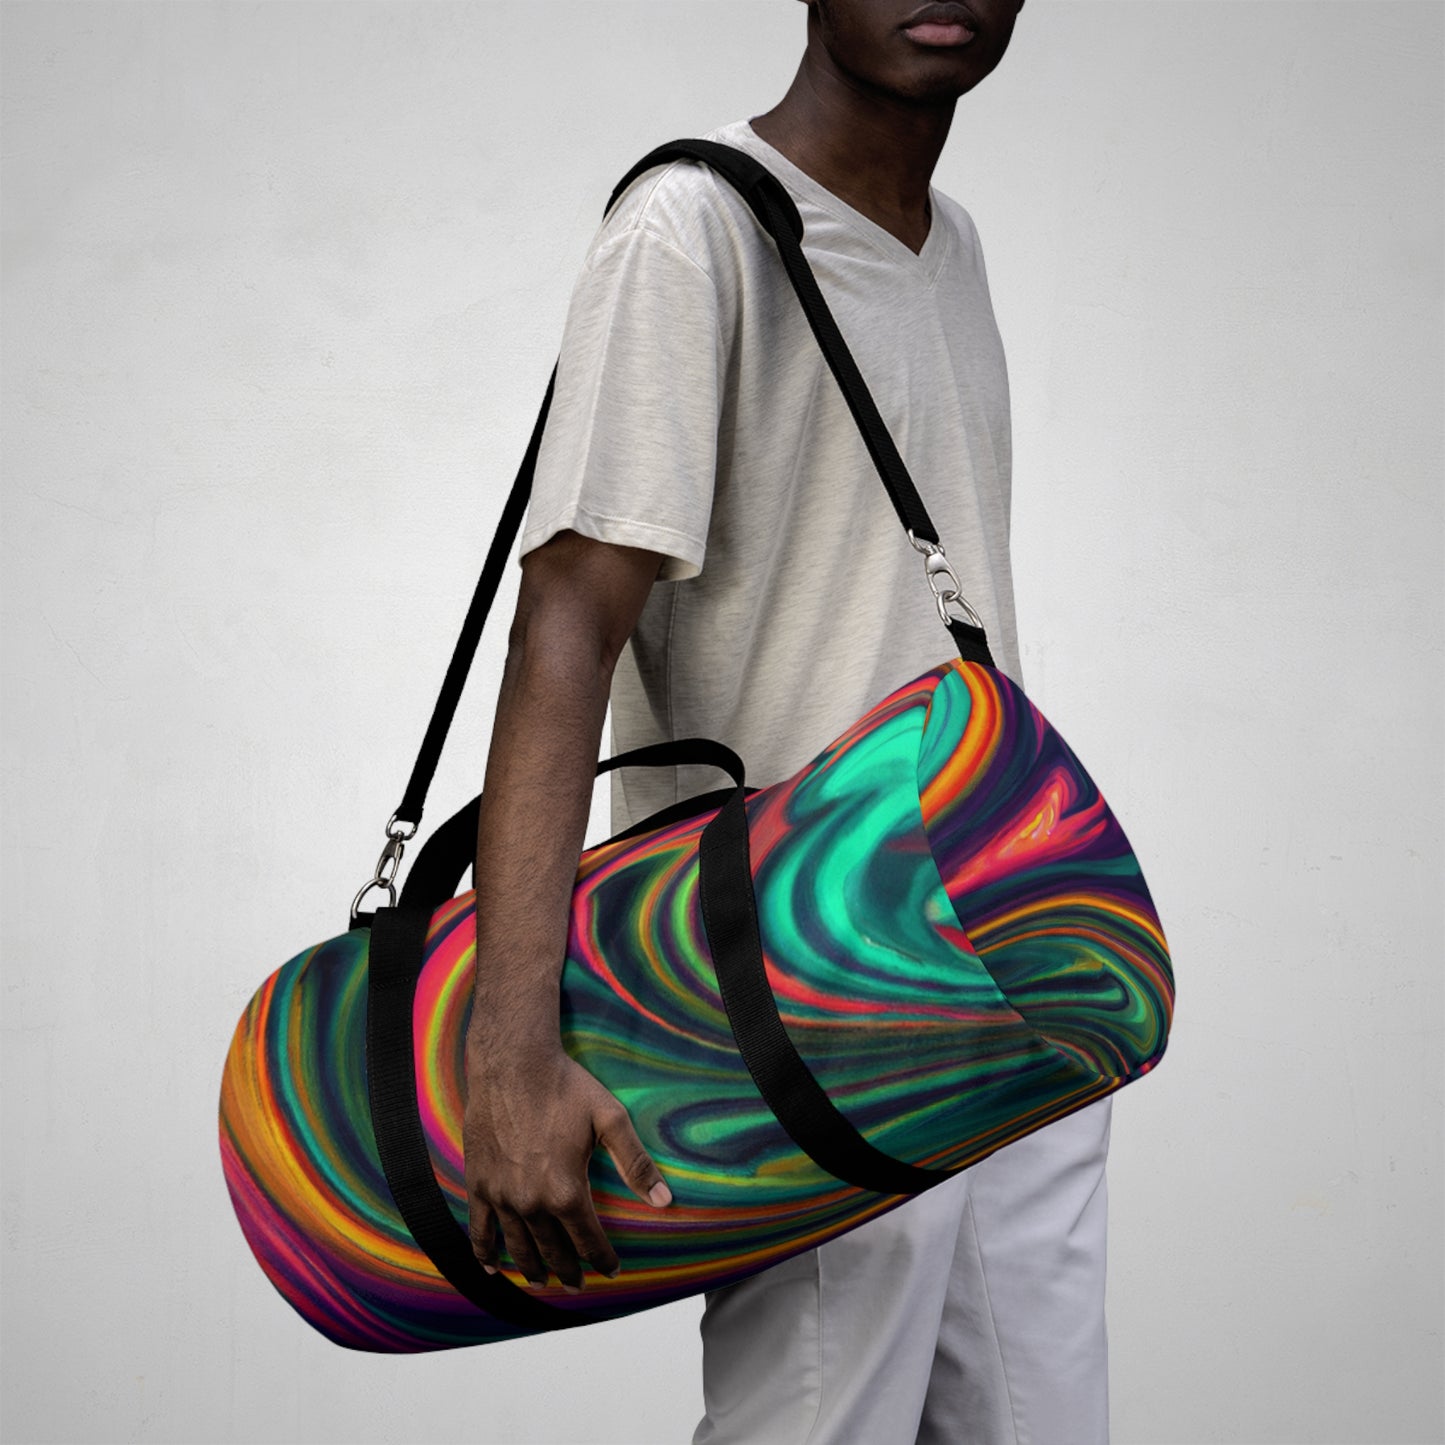 Finnley Fashions - Psychedelic Duffel Bag